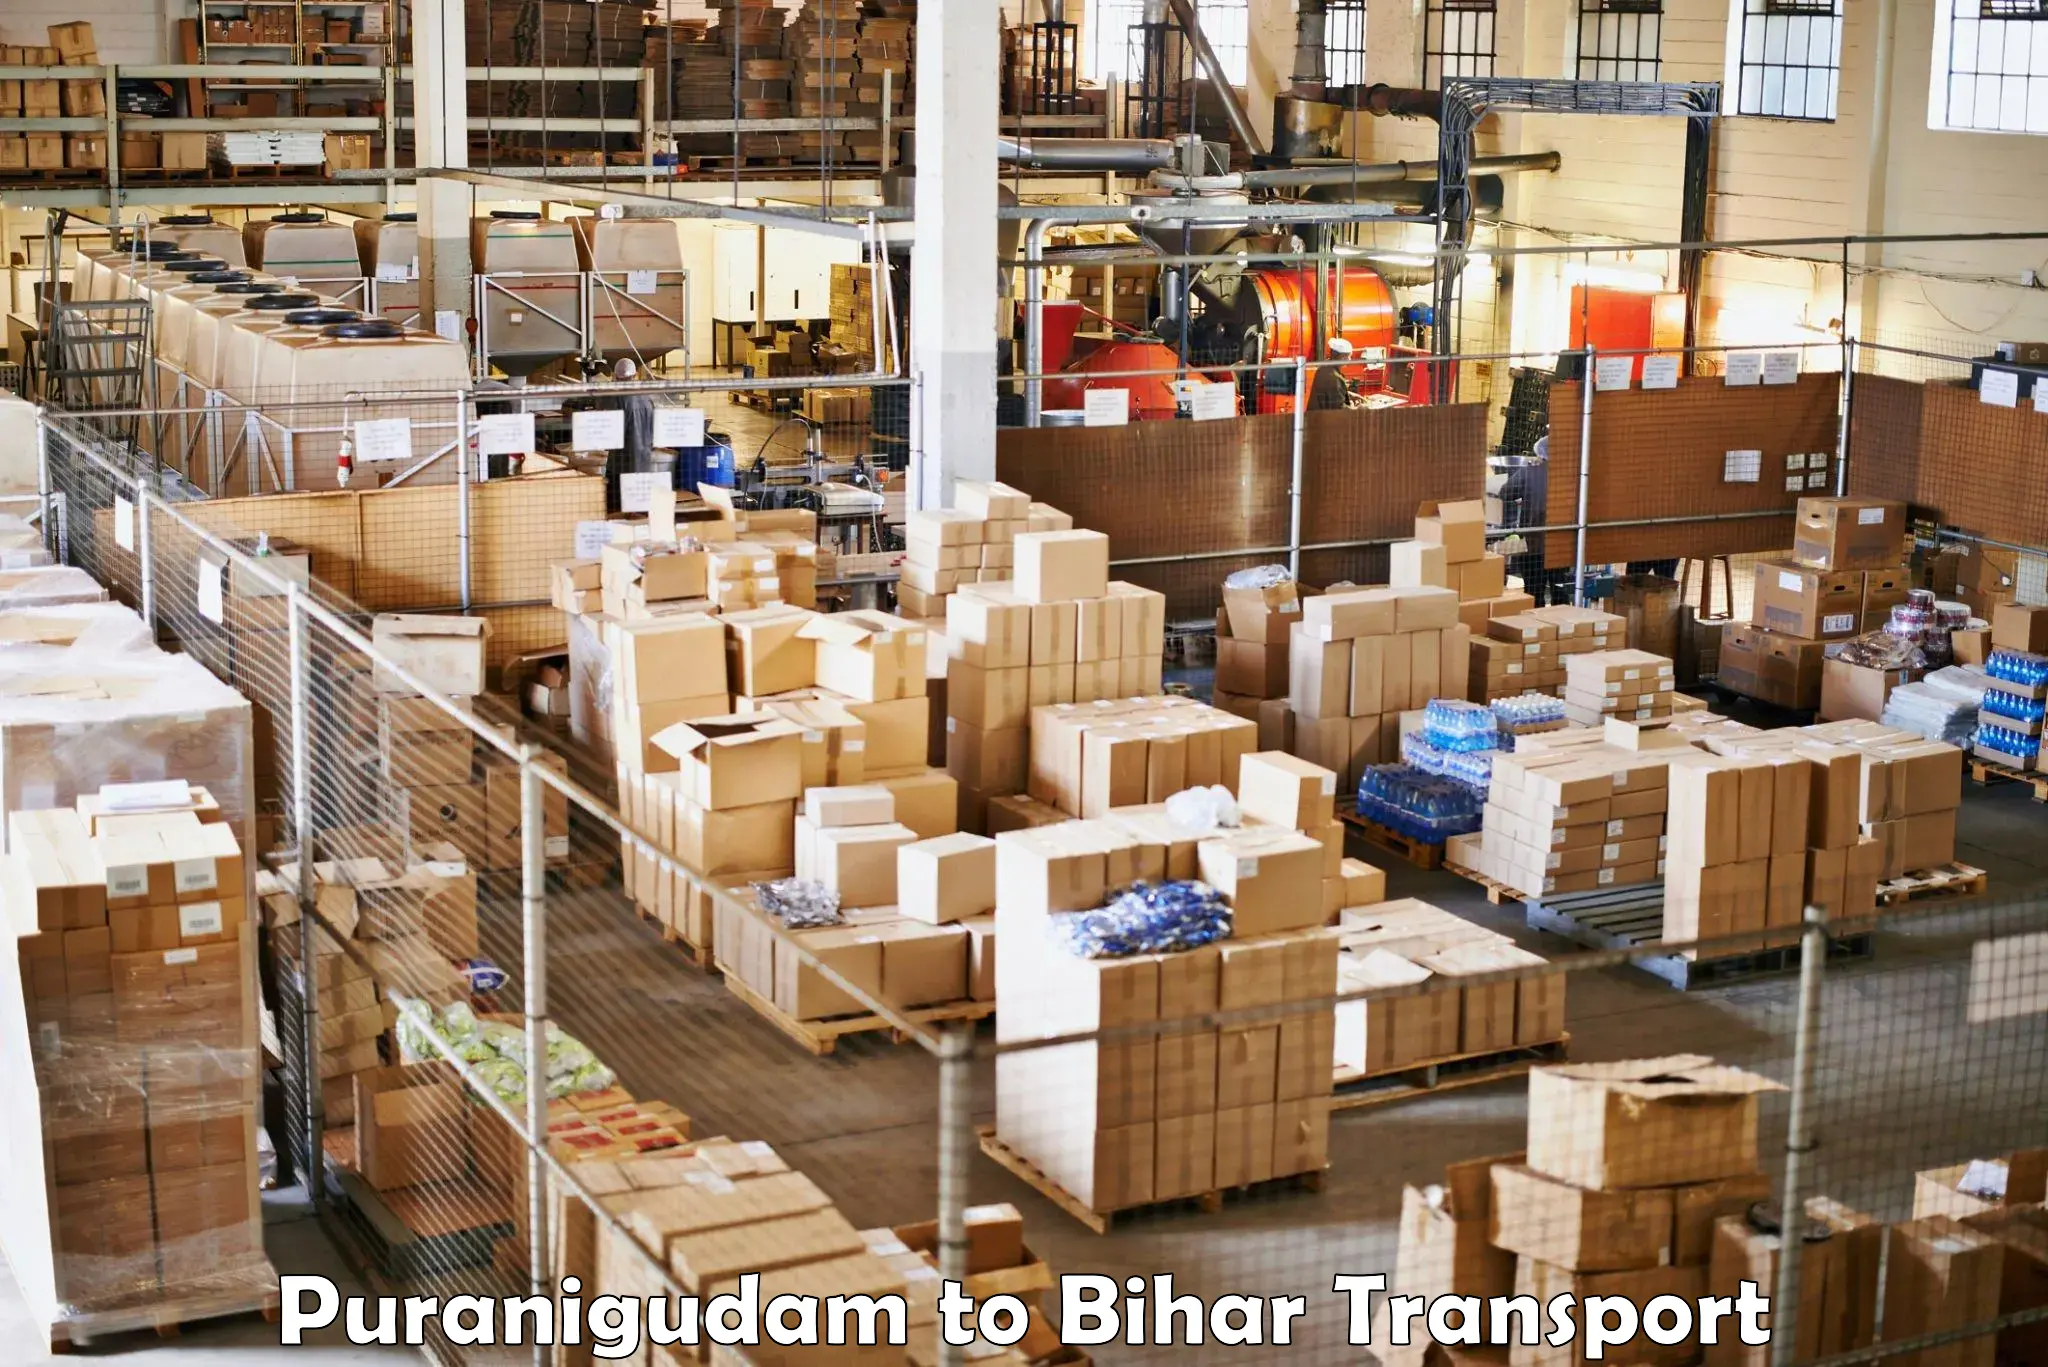 Cargo transportation services Puranigudam to Bihar